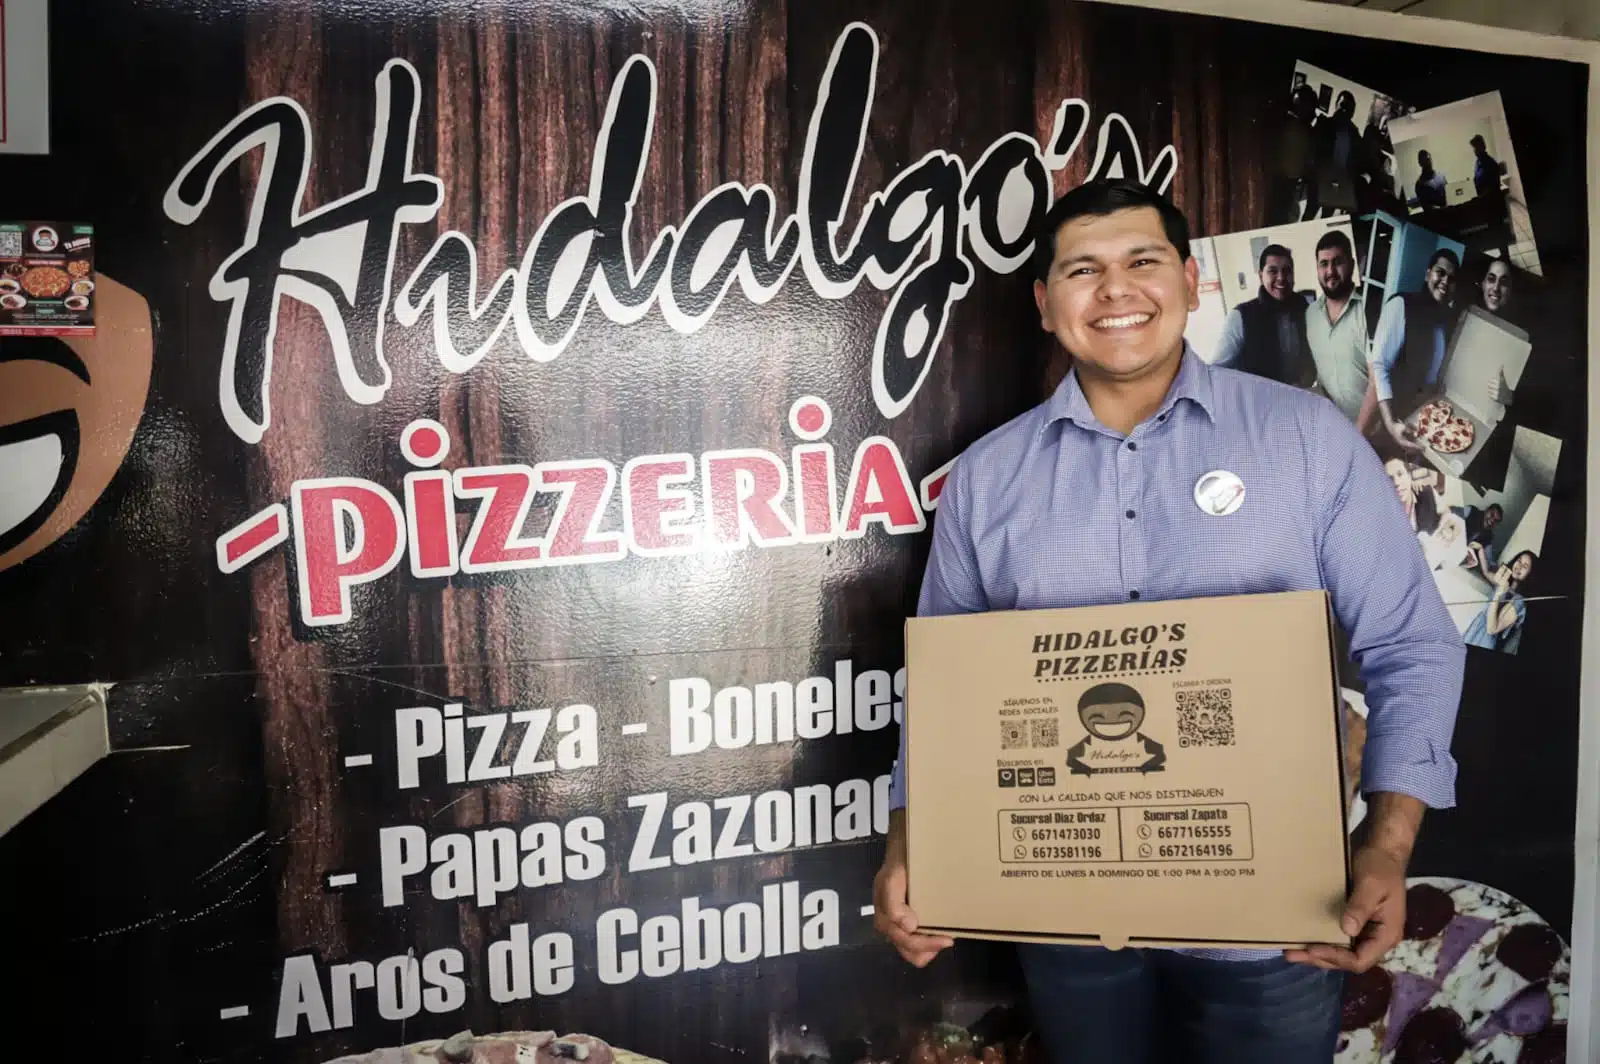 Portada Pizzas Heladios Hidalgo